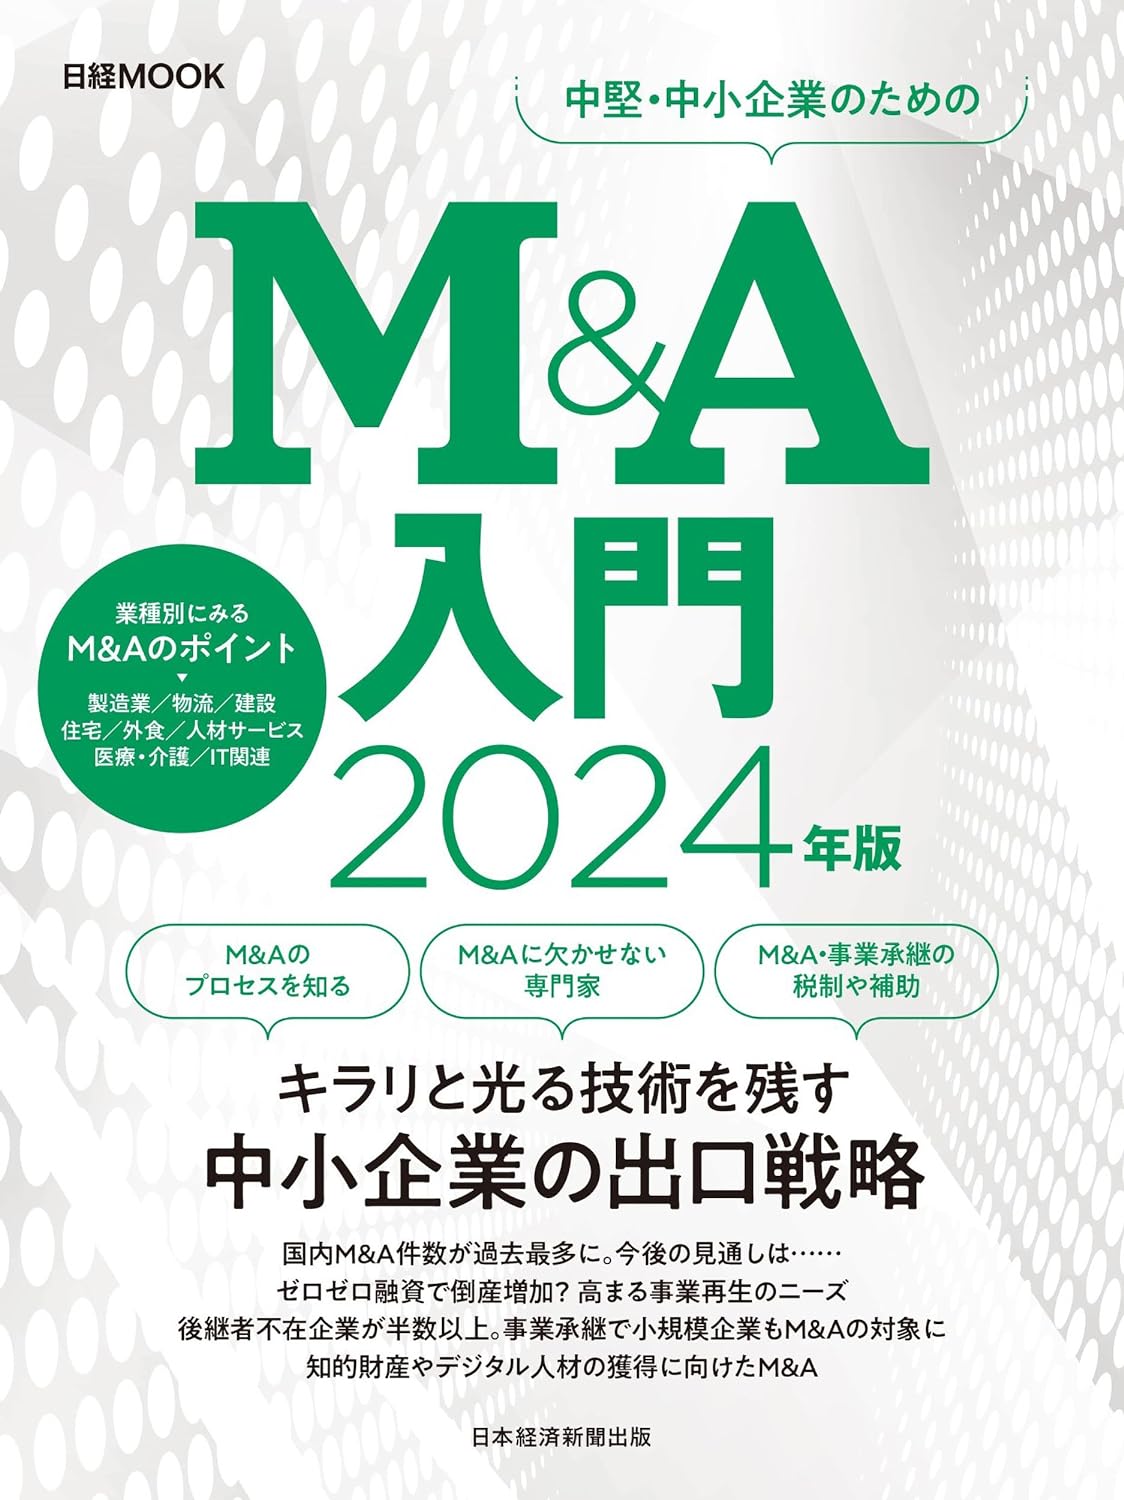 年更新M&A   本・書籍M&A関連のおすすめ本・書籍一覧   M&A